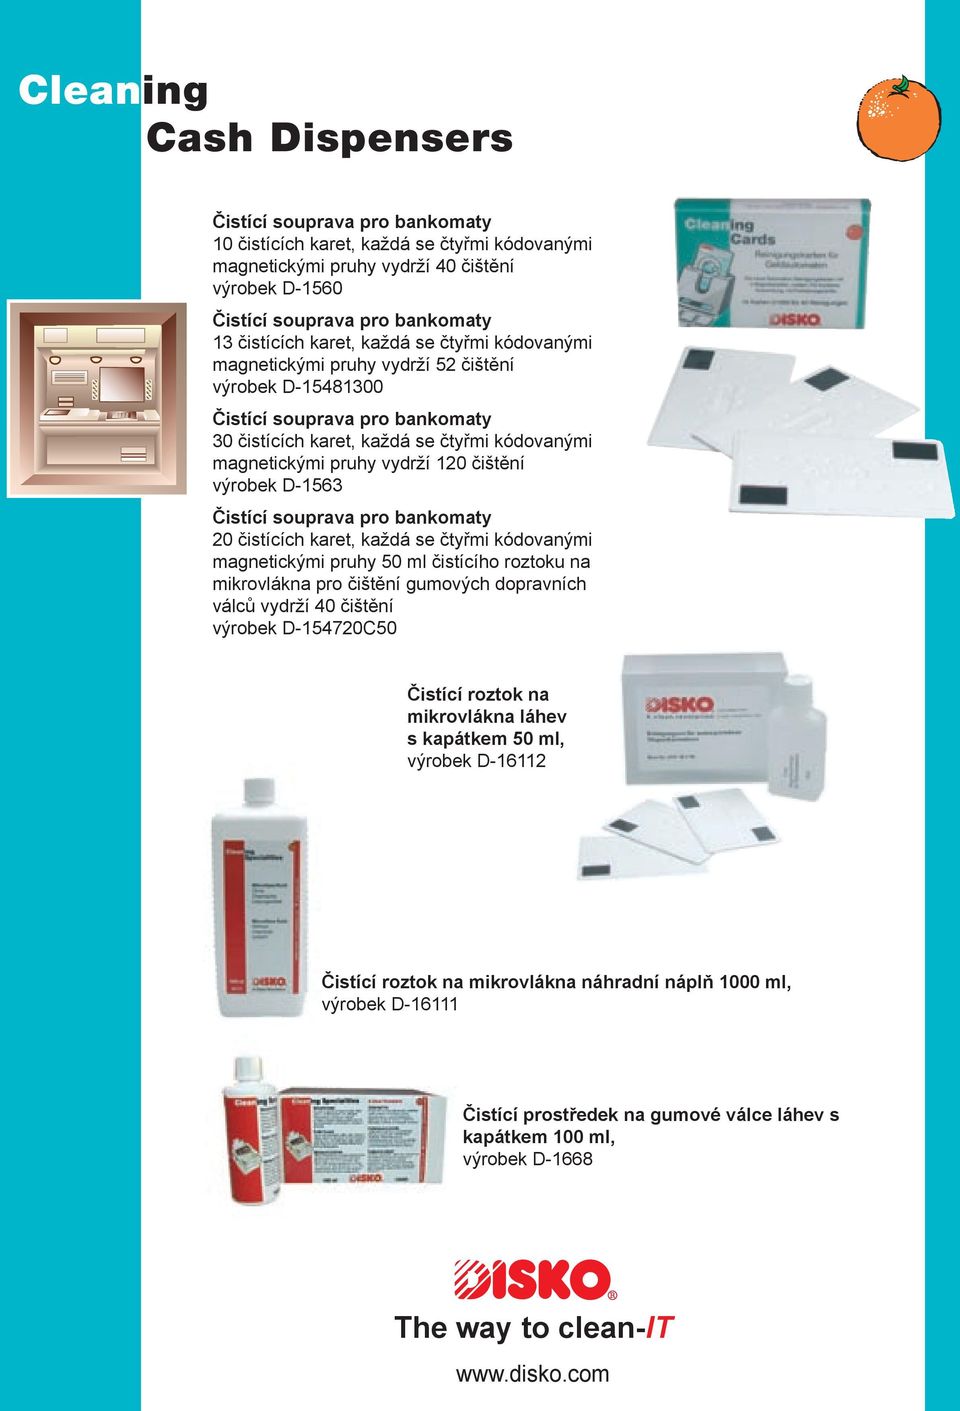 výrobek D-1563 Čistící souprava pro bankomaty 20 čistících karet, každá se čtyřmi kódovanými magnetickými pruhy 50 ml čistícího roztoku na mikrovlákna pro čištění gumových dopravních válců vydrží 40